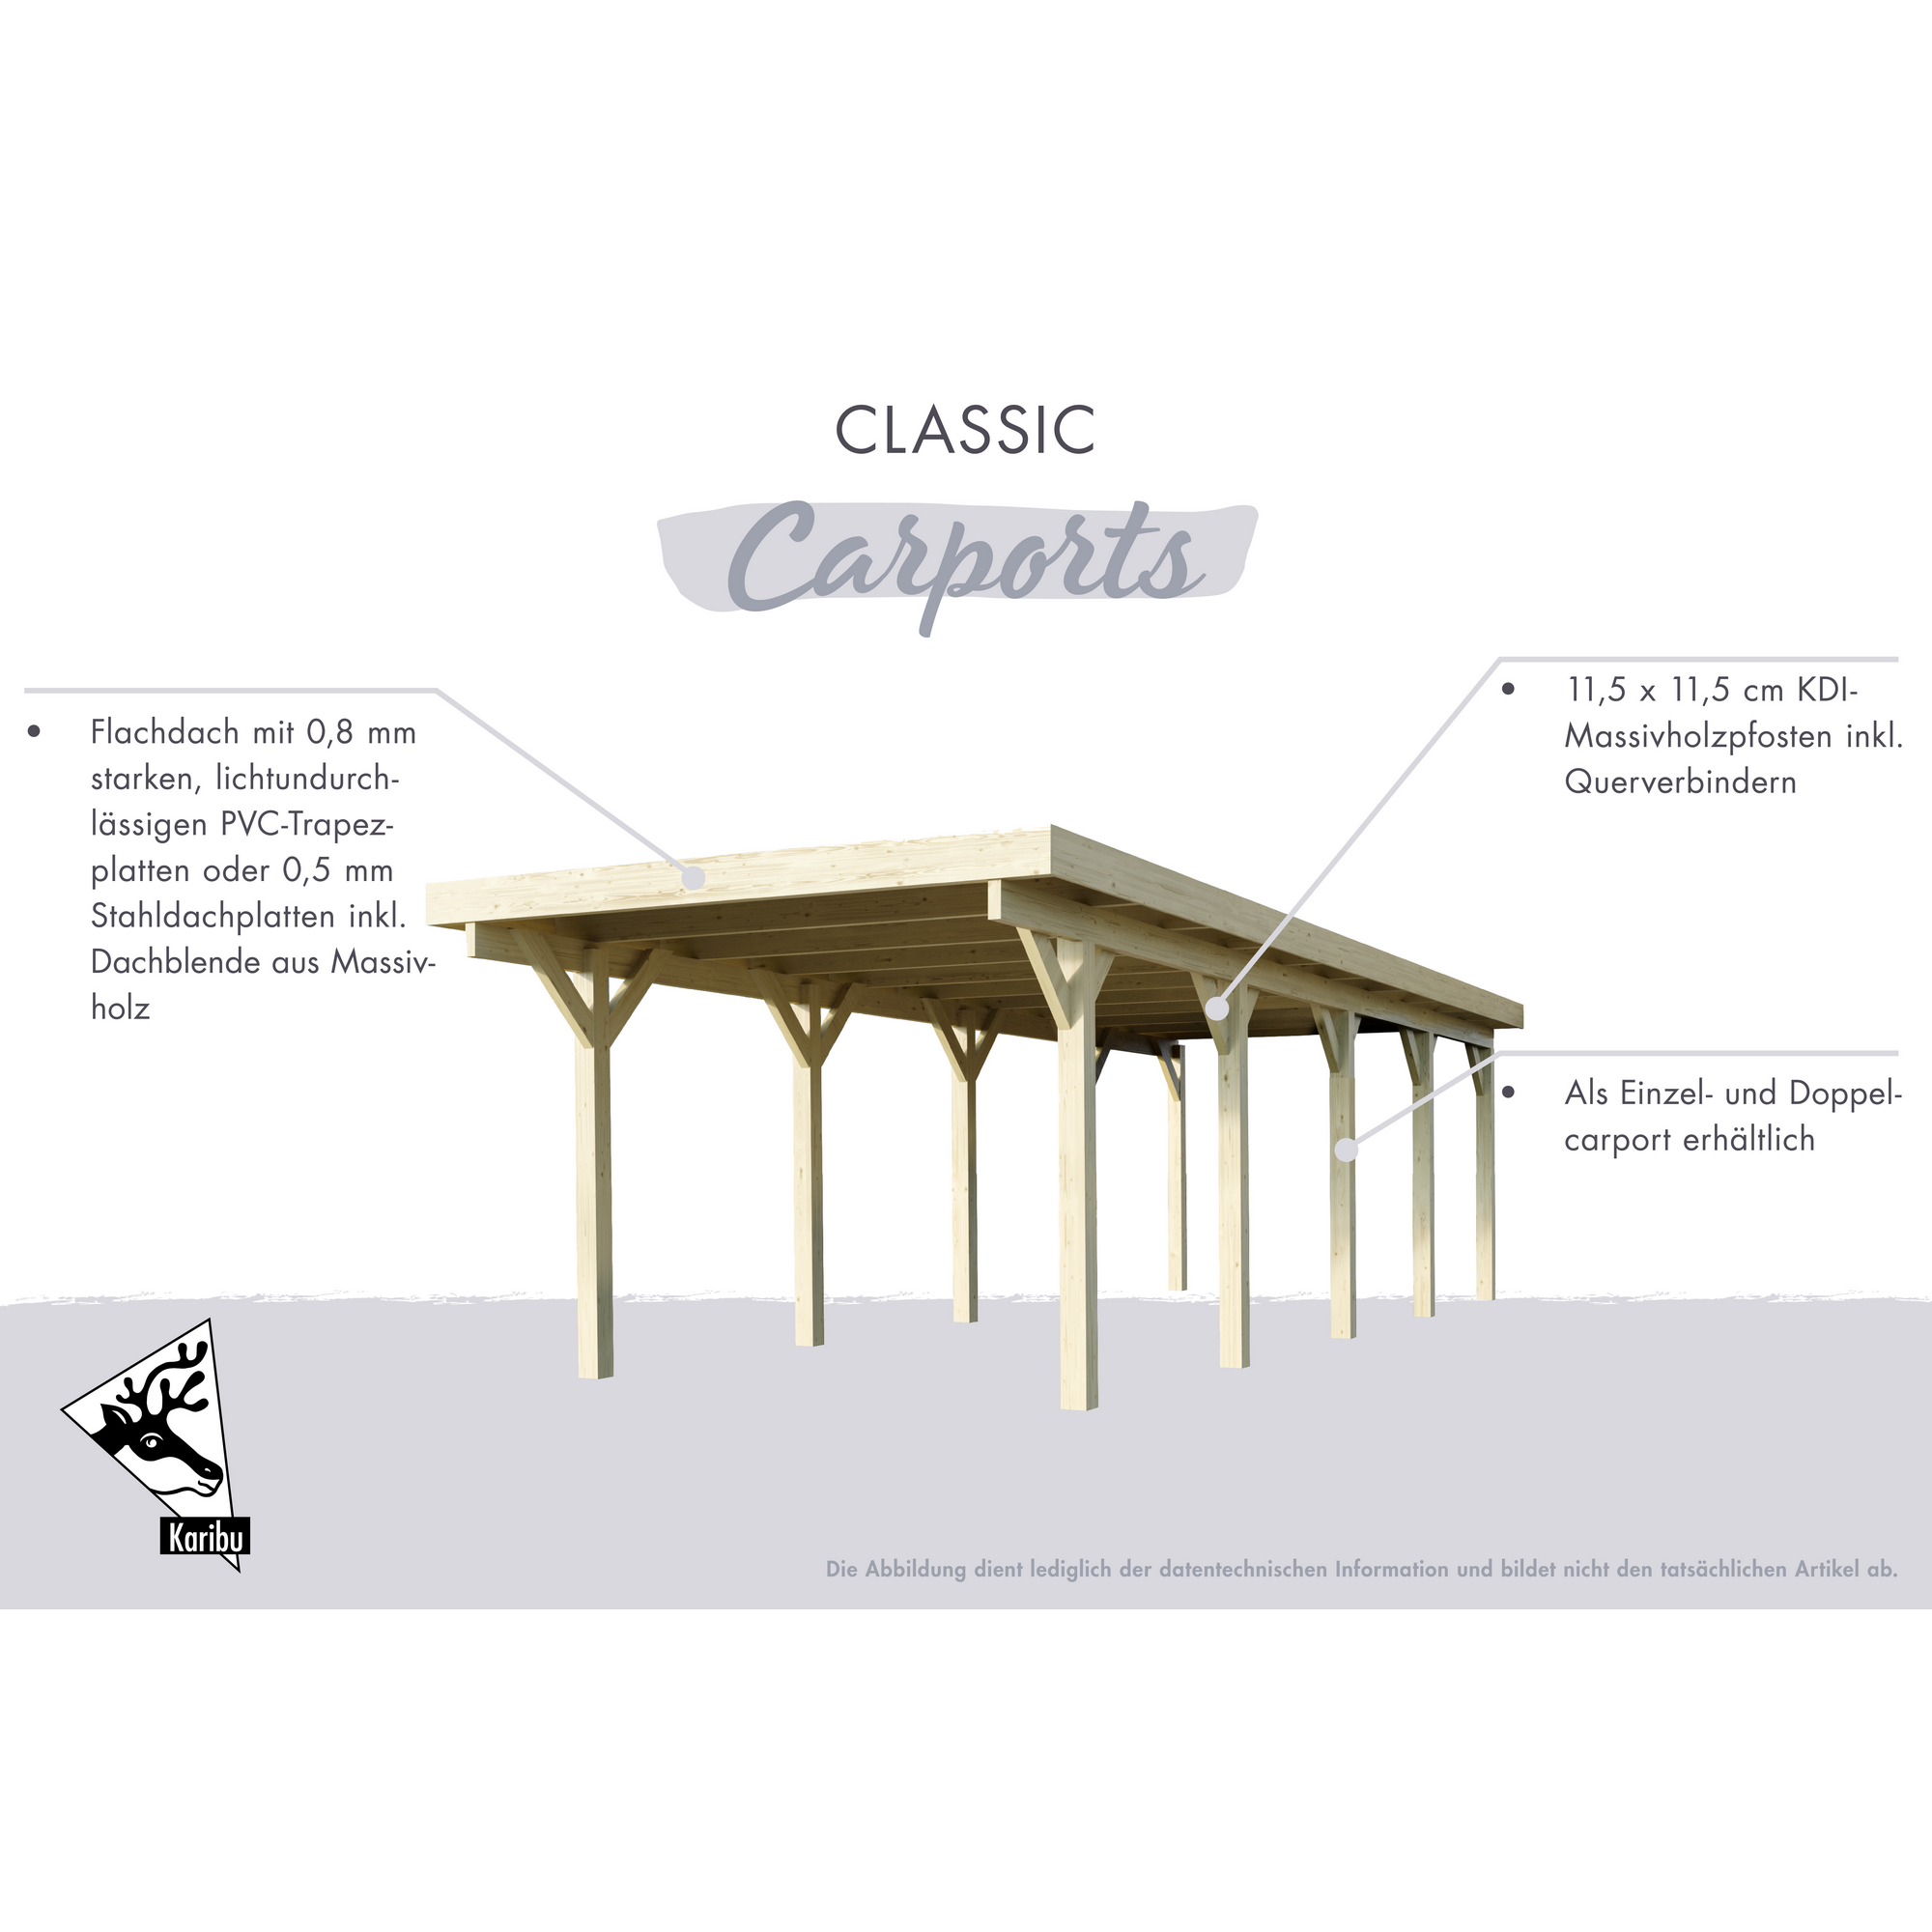 Einzelcarport 'Carlos 2' Kiefer PVC-Dach mit zwei Einfahrtsbögen 670 x 318 x 234 cm + product picture